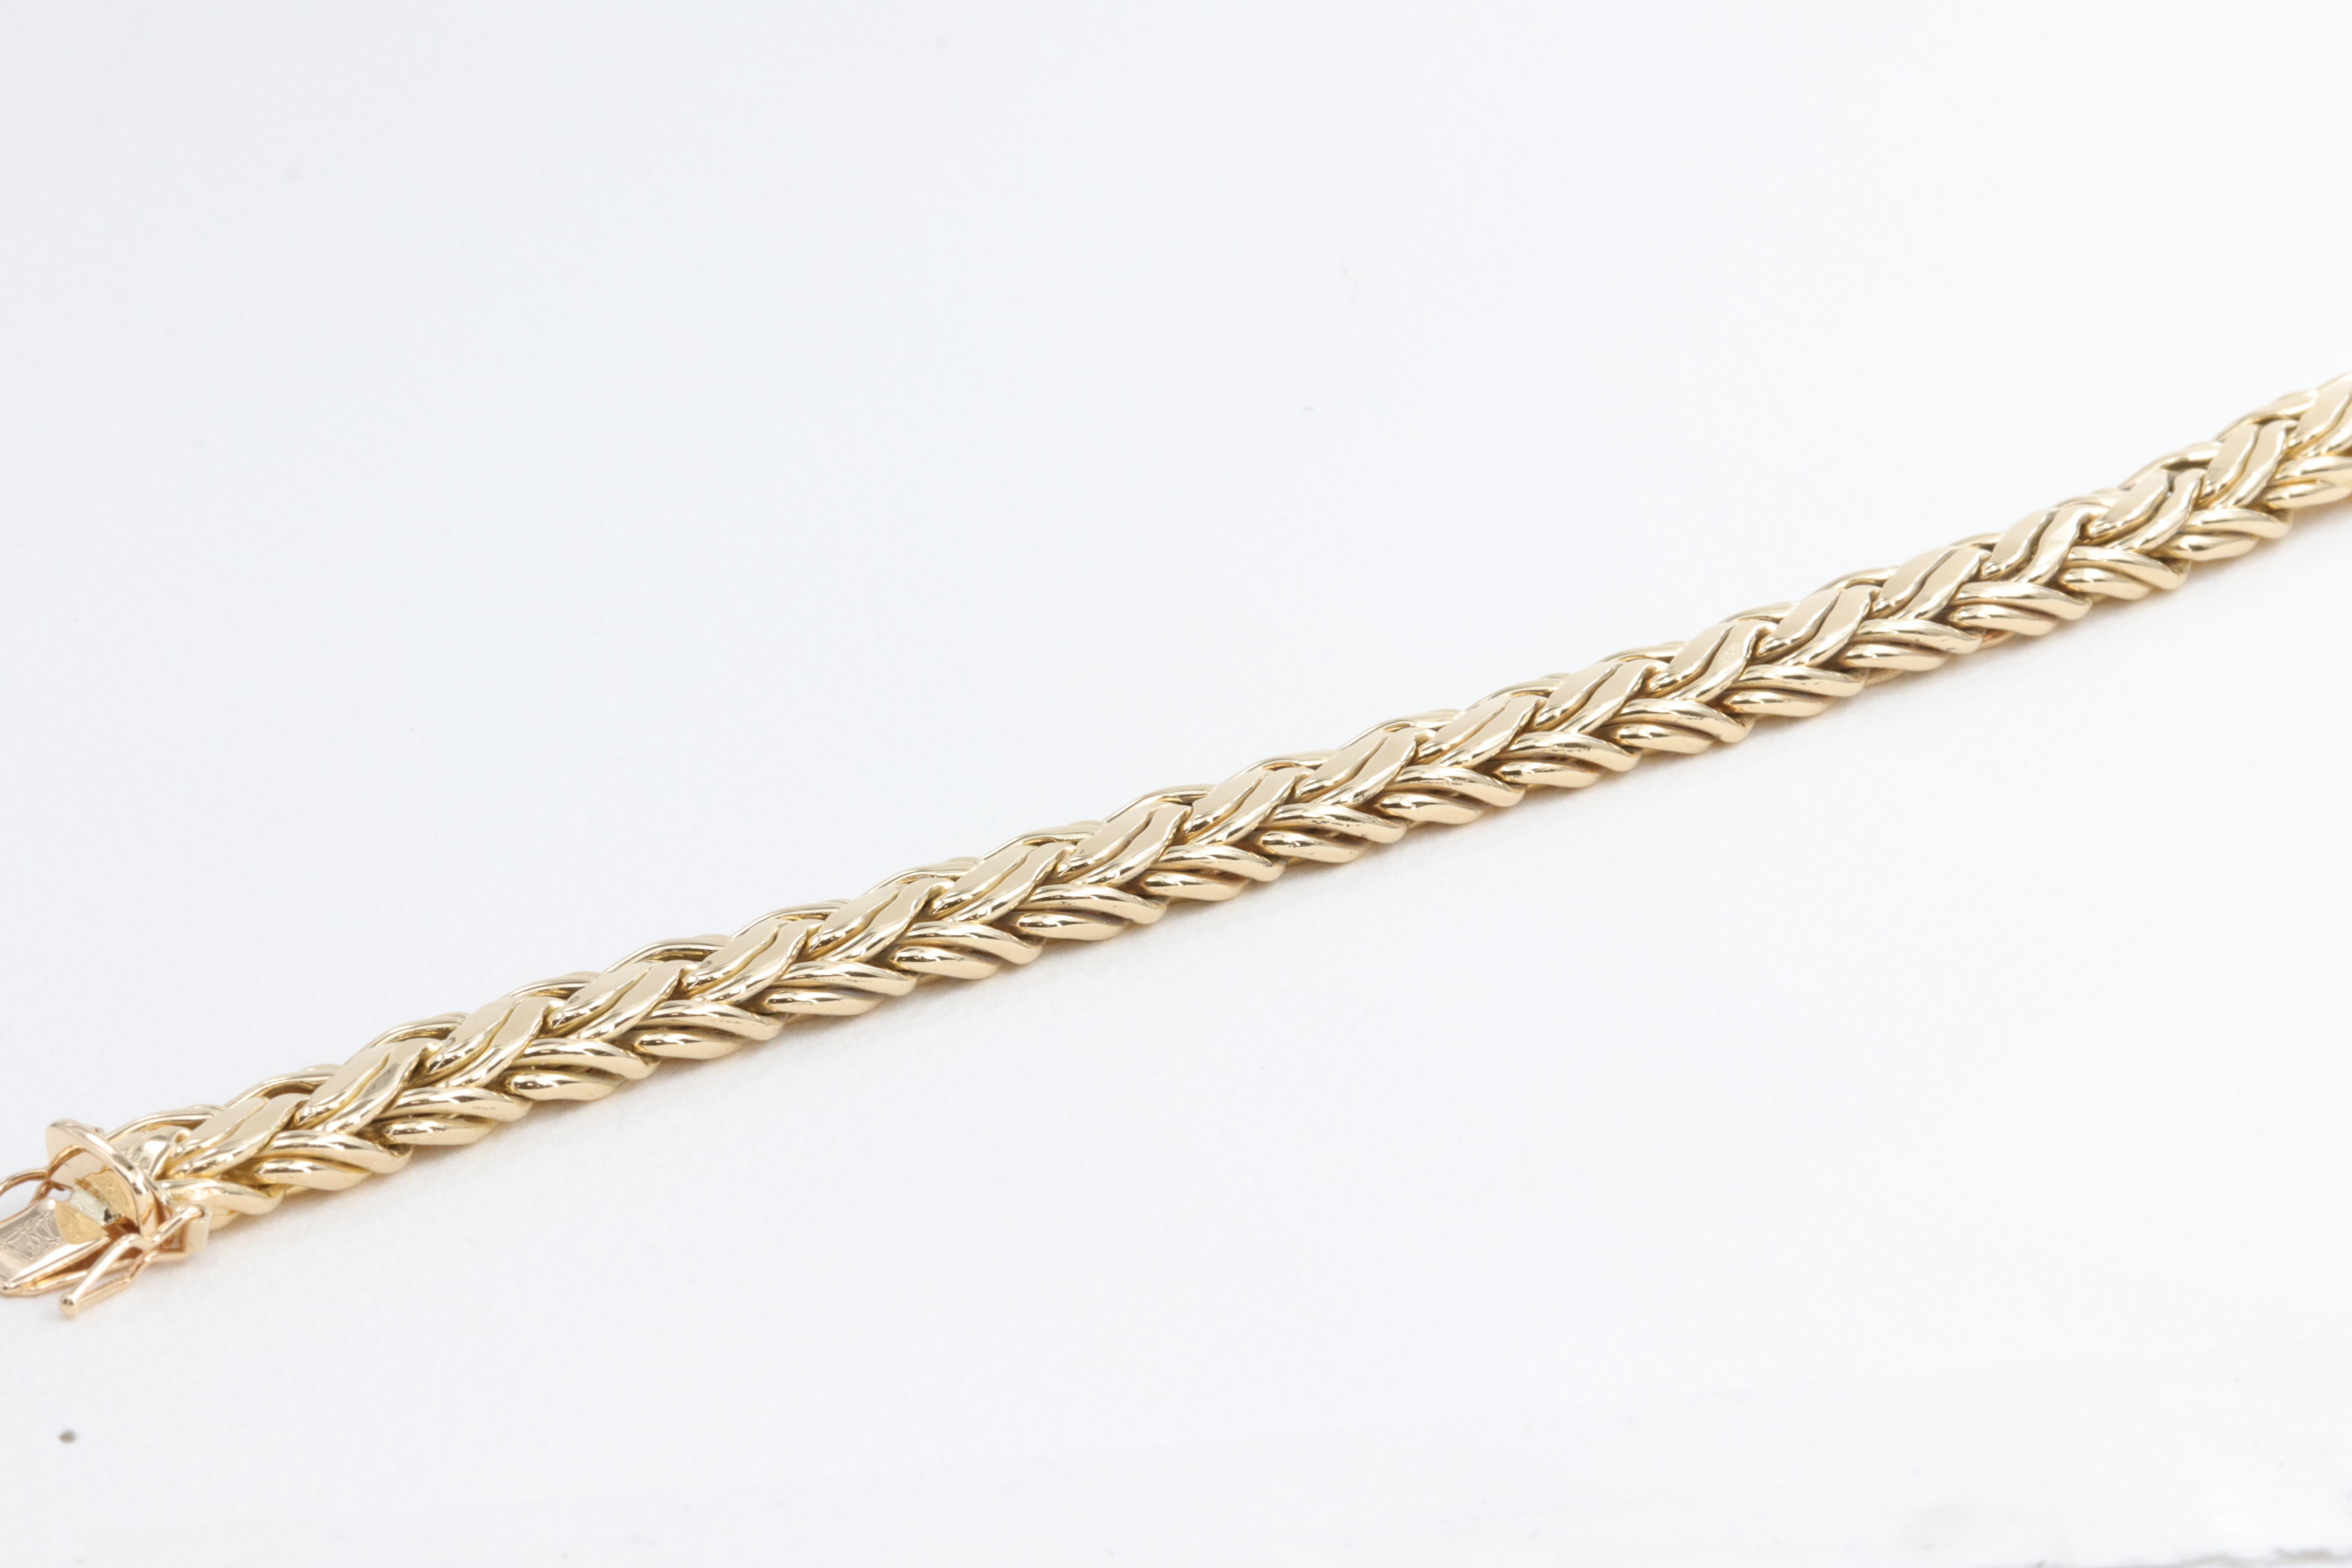 tiffany braided bracelet